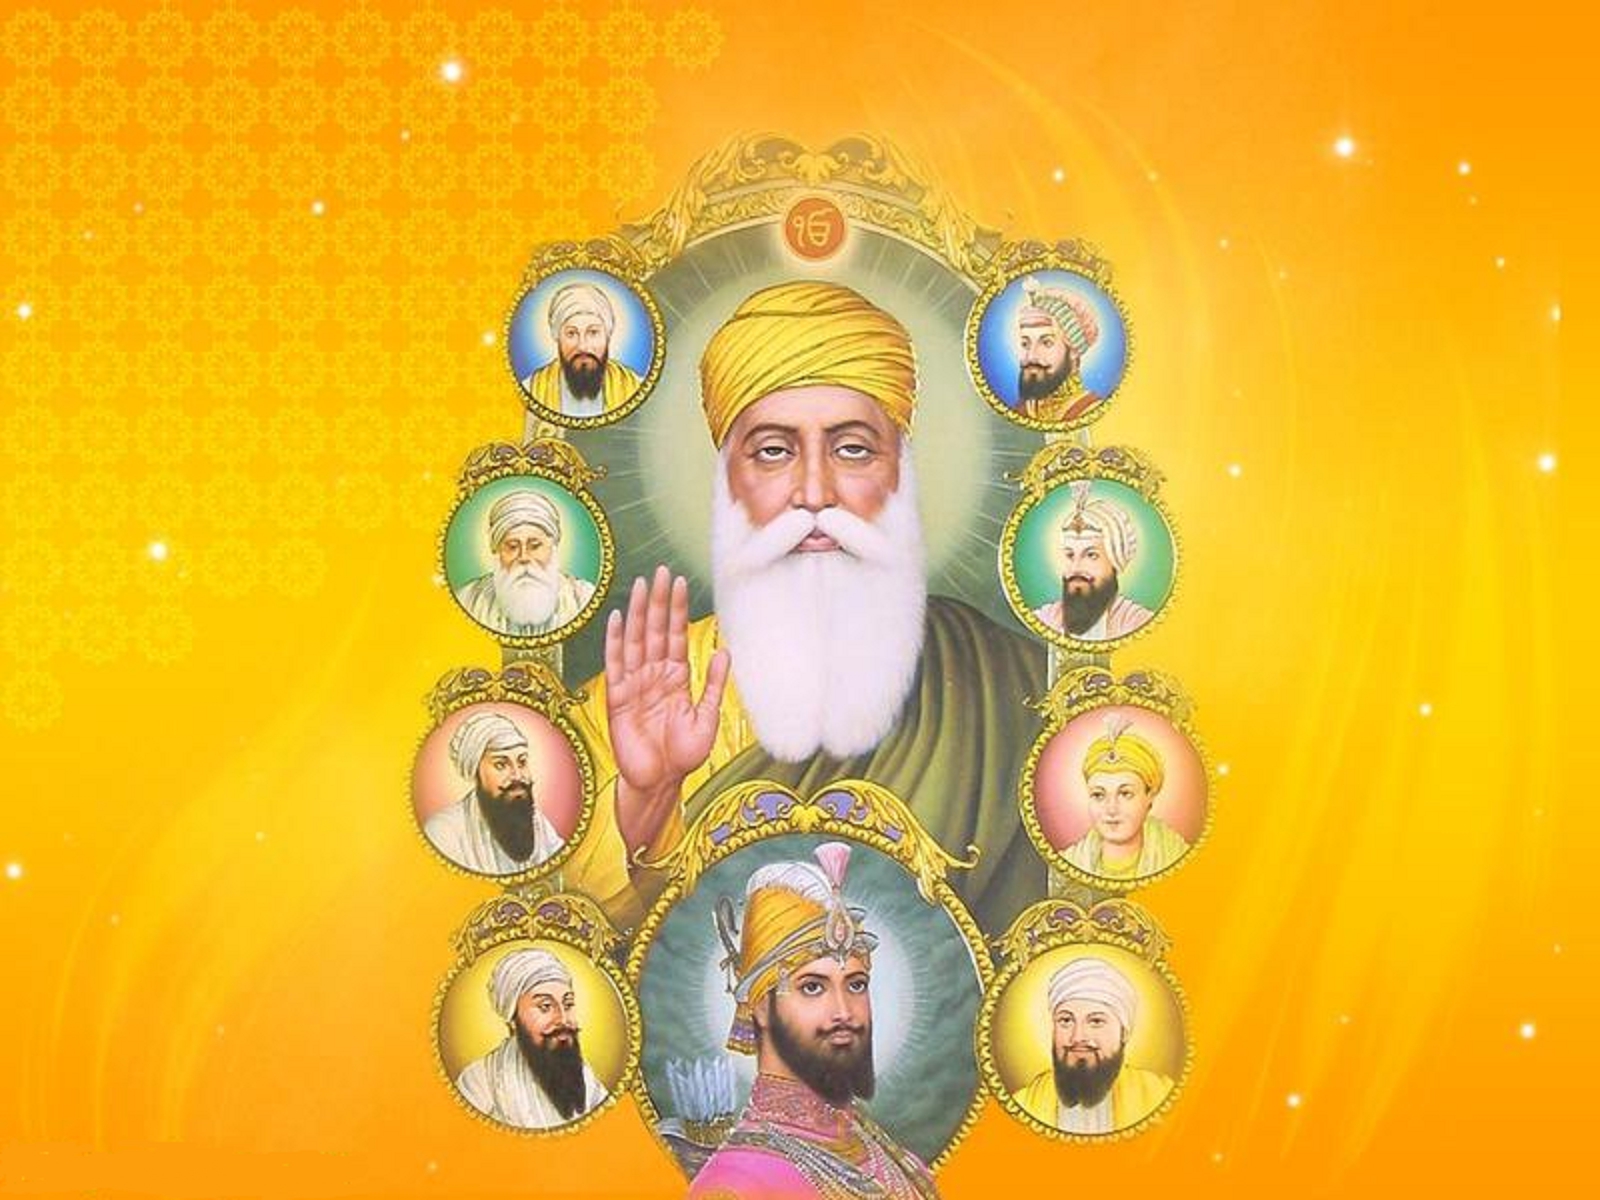 Sikh Gurus wallpaper   ForWallpapercom